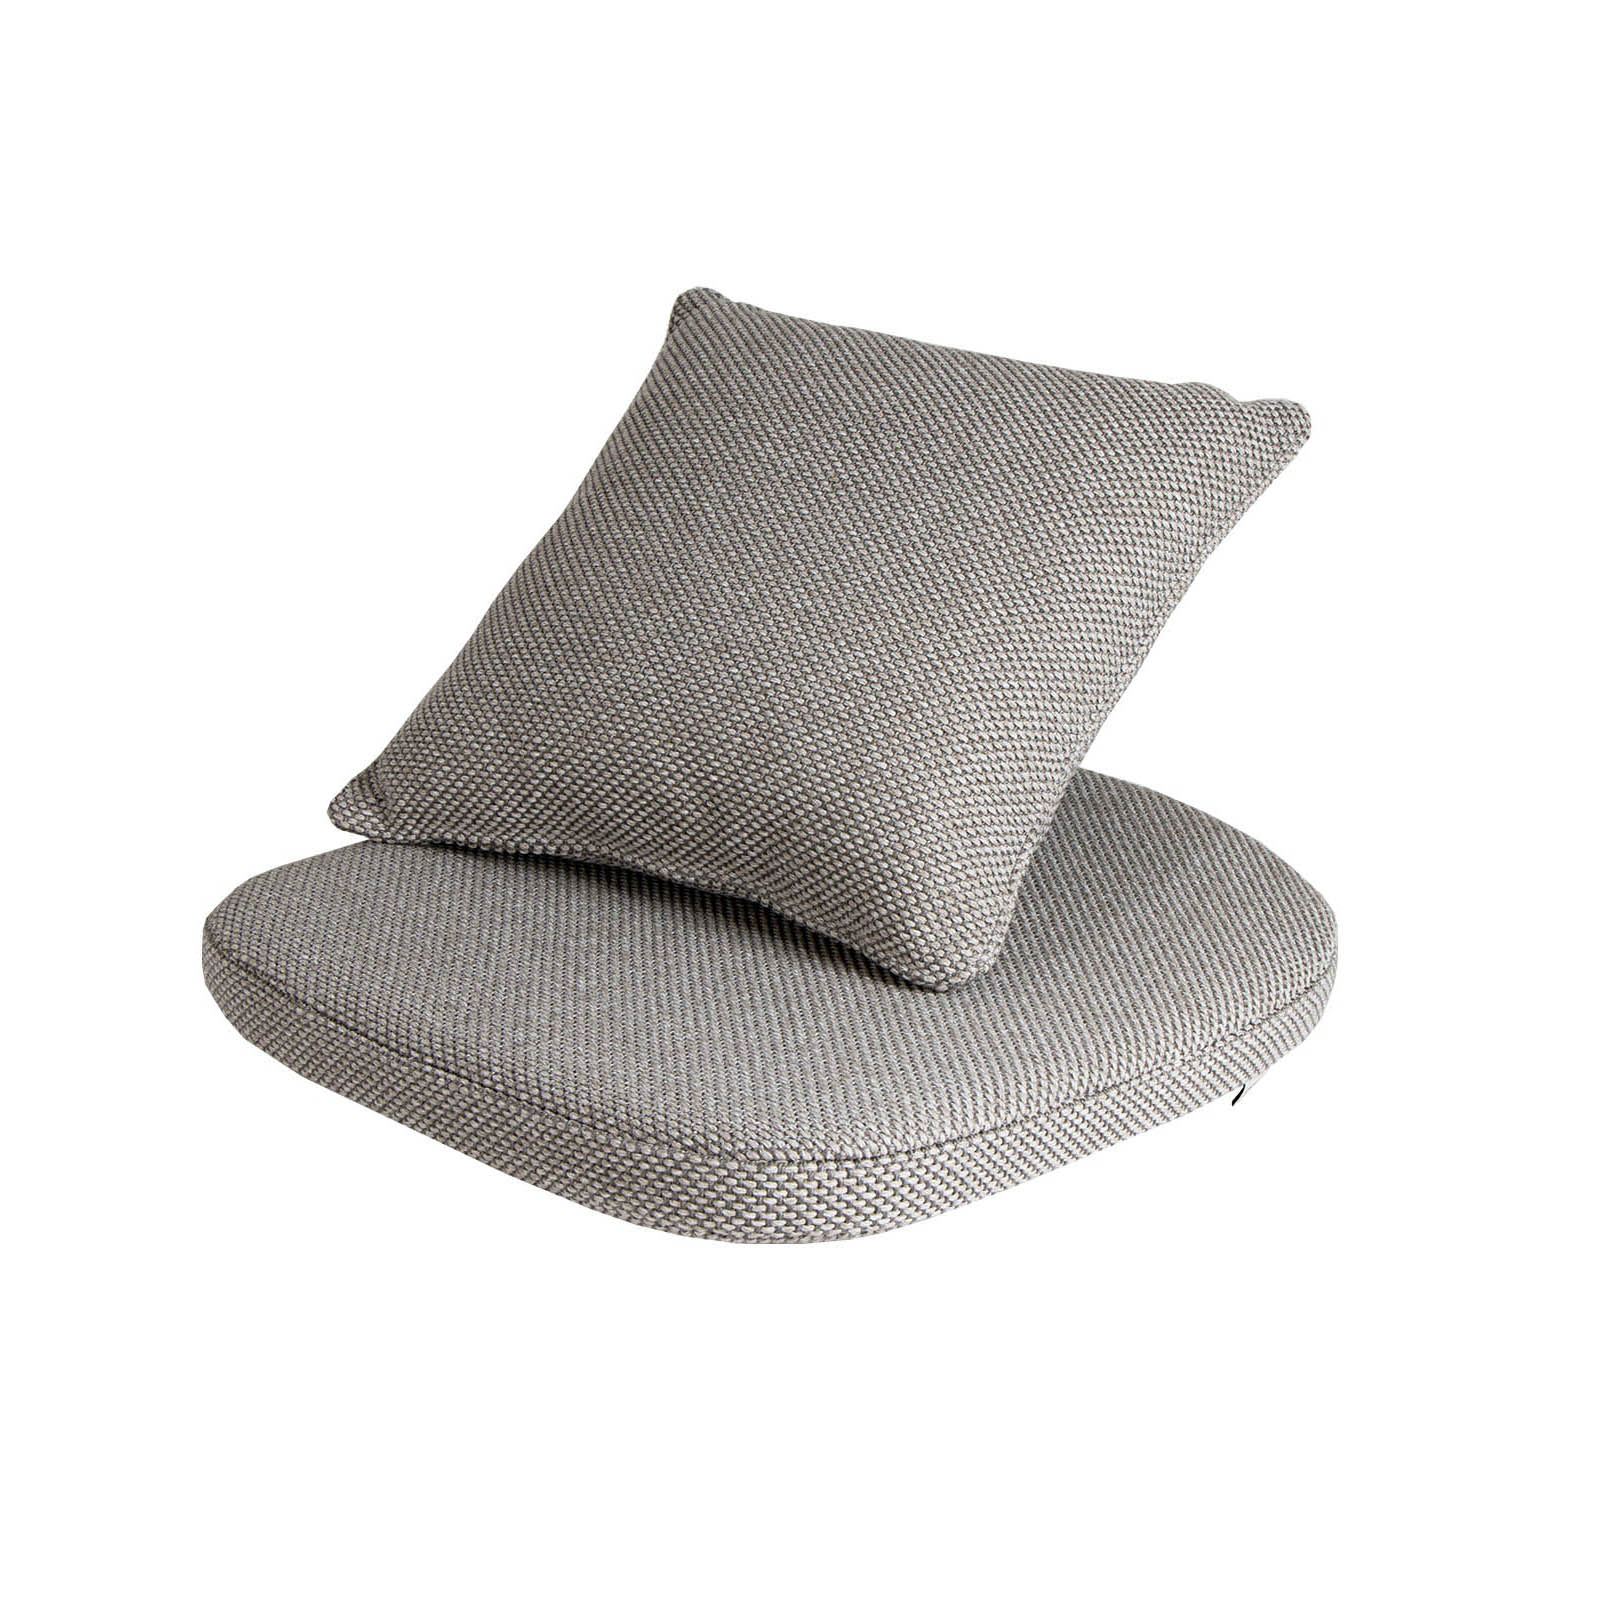 Basket Kissen für Sessel aus Cane-line Wove in Dark Grey